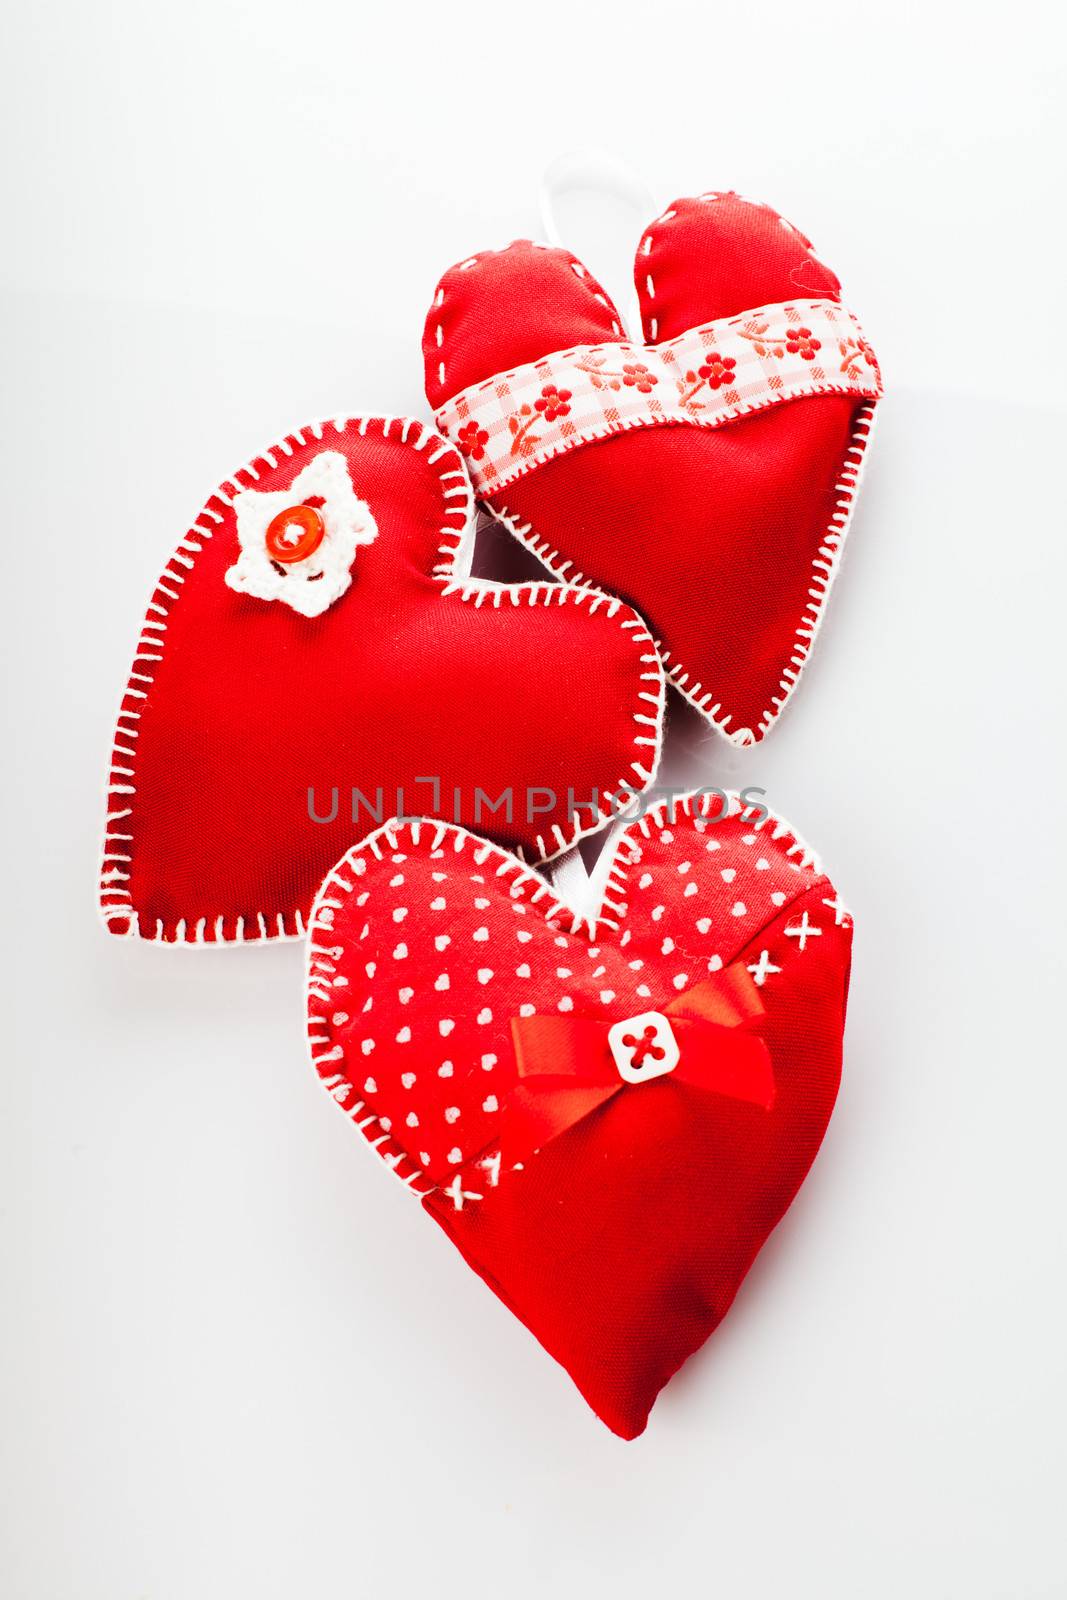 Handmade red hearts by oksix